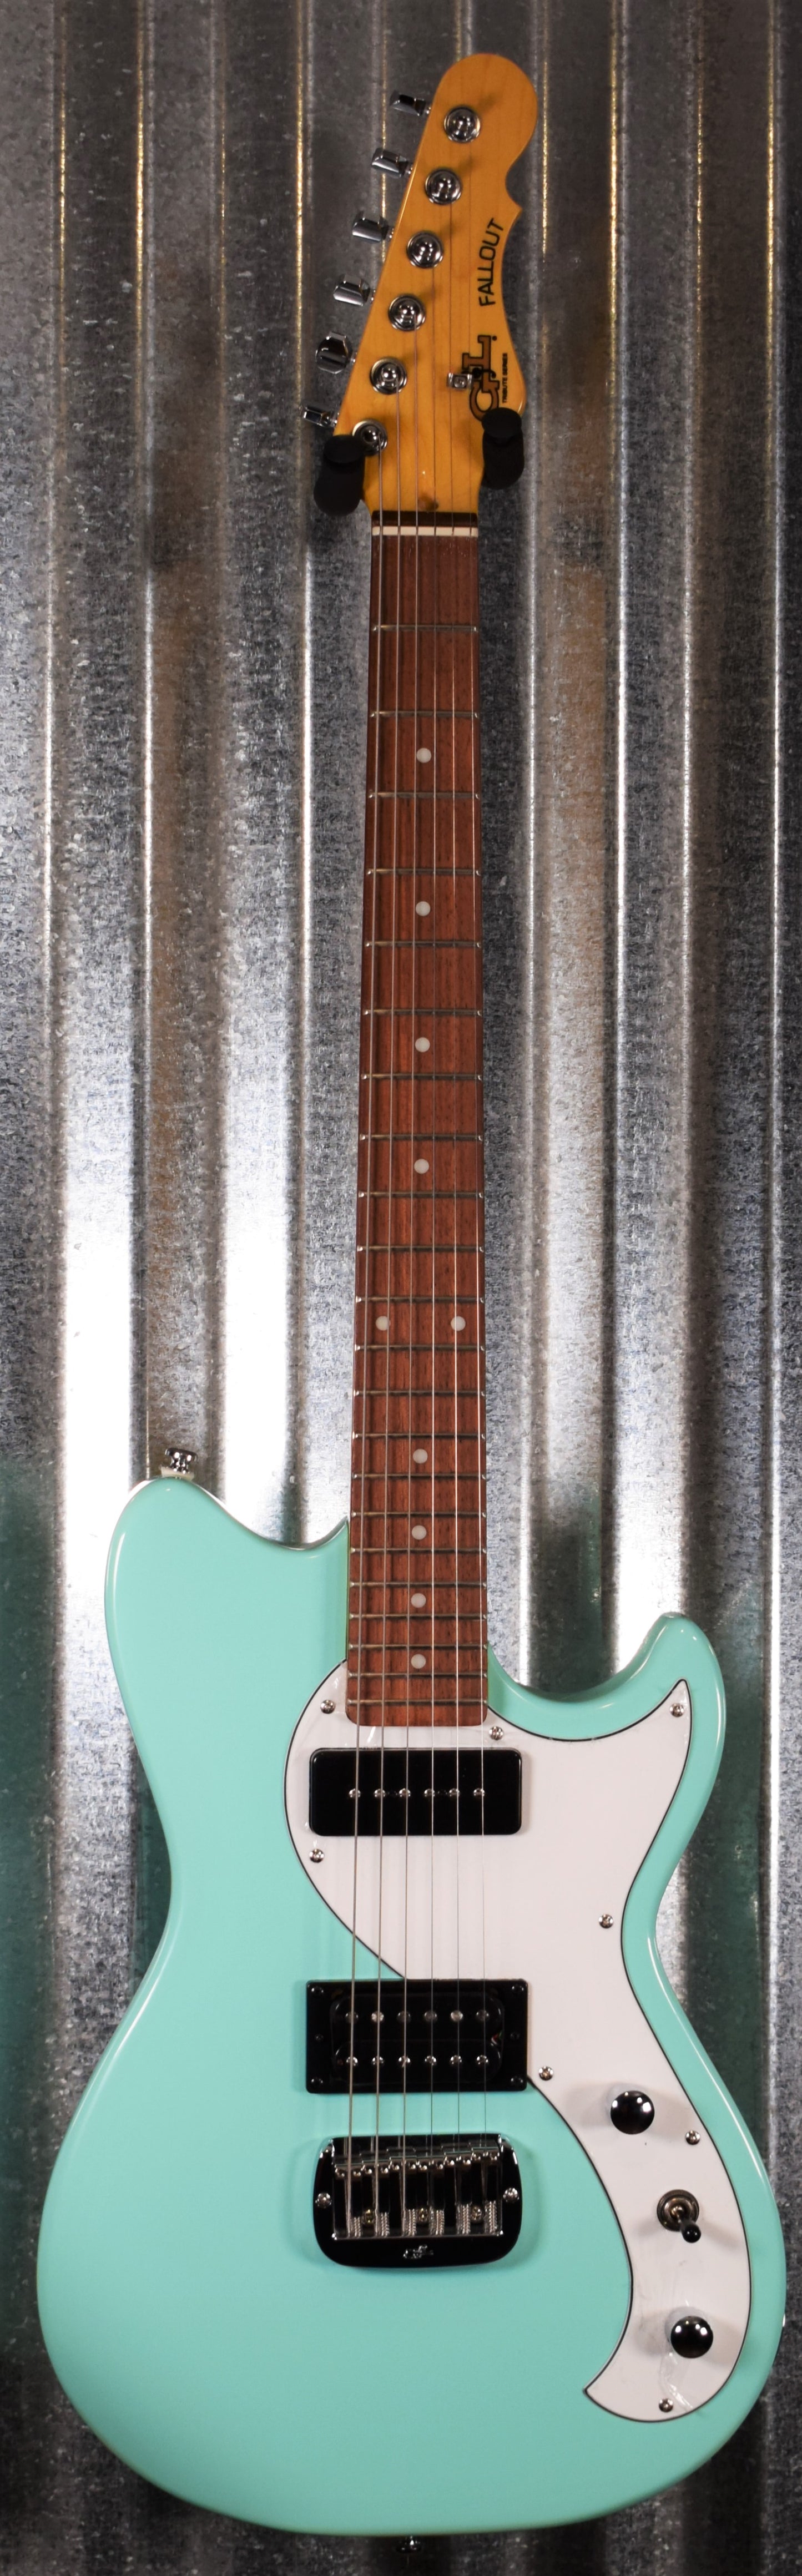 G&L Tribute Fallout Seafoam Green Guitar #9124 Demo